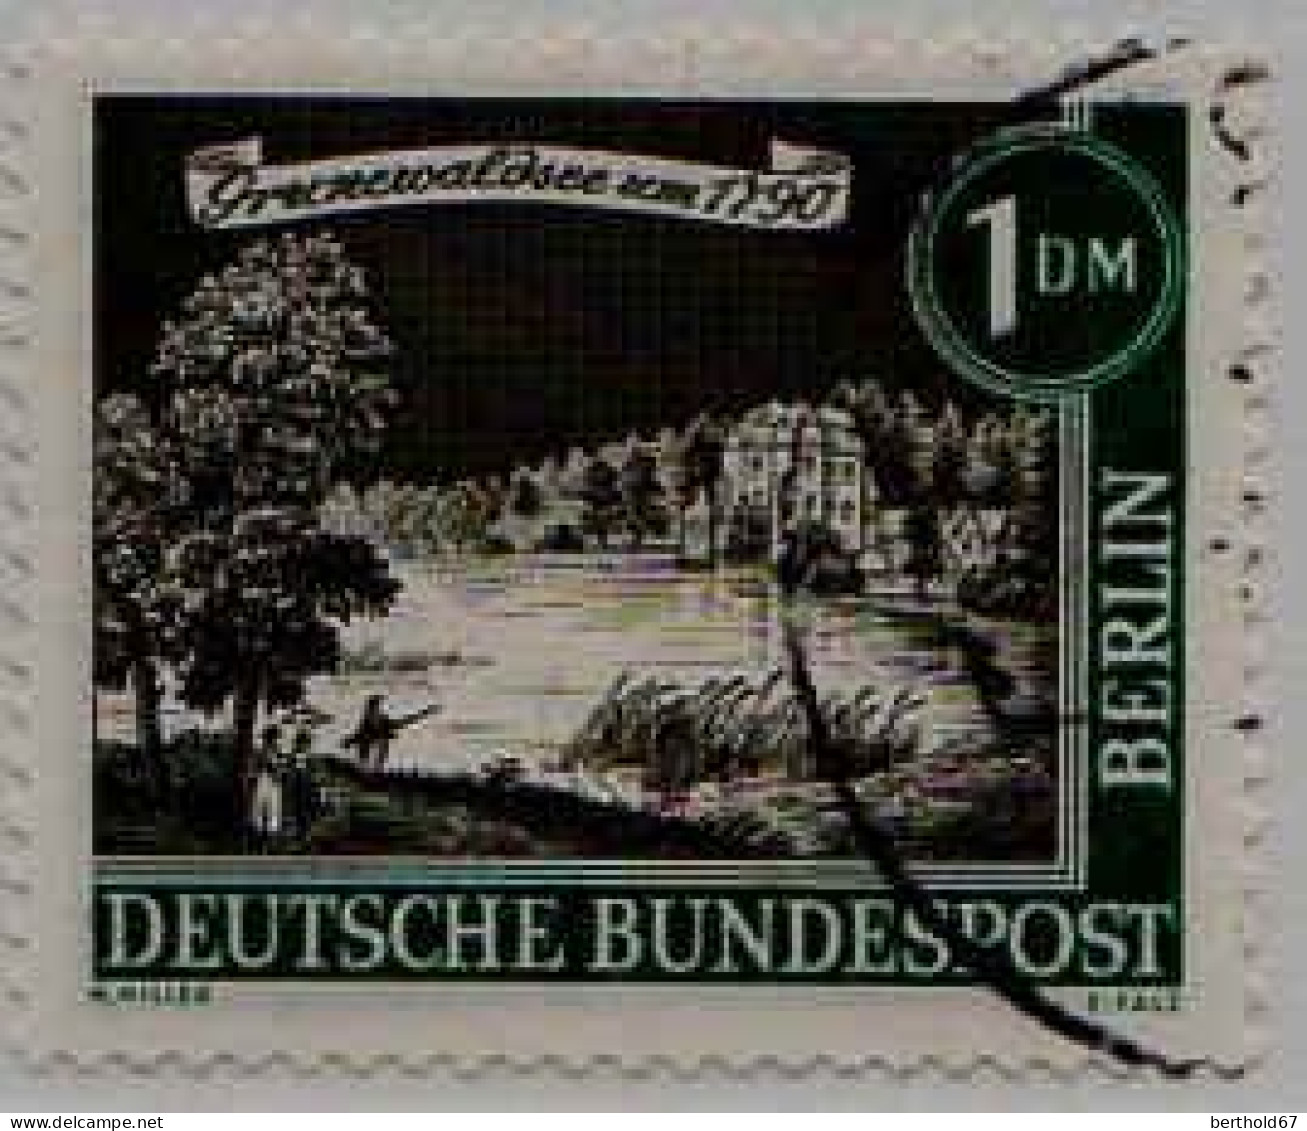 Berlin Poste Obl Yv:207 Mi:229 Grünewaldsee Um 1790 (Beau Cachet Rond) - Used Stamps